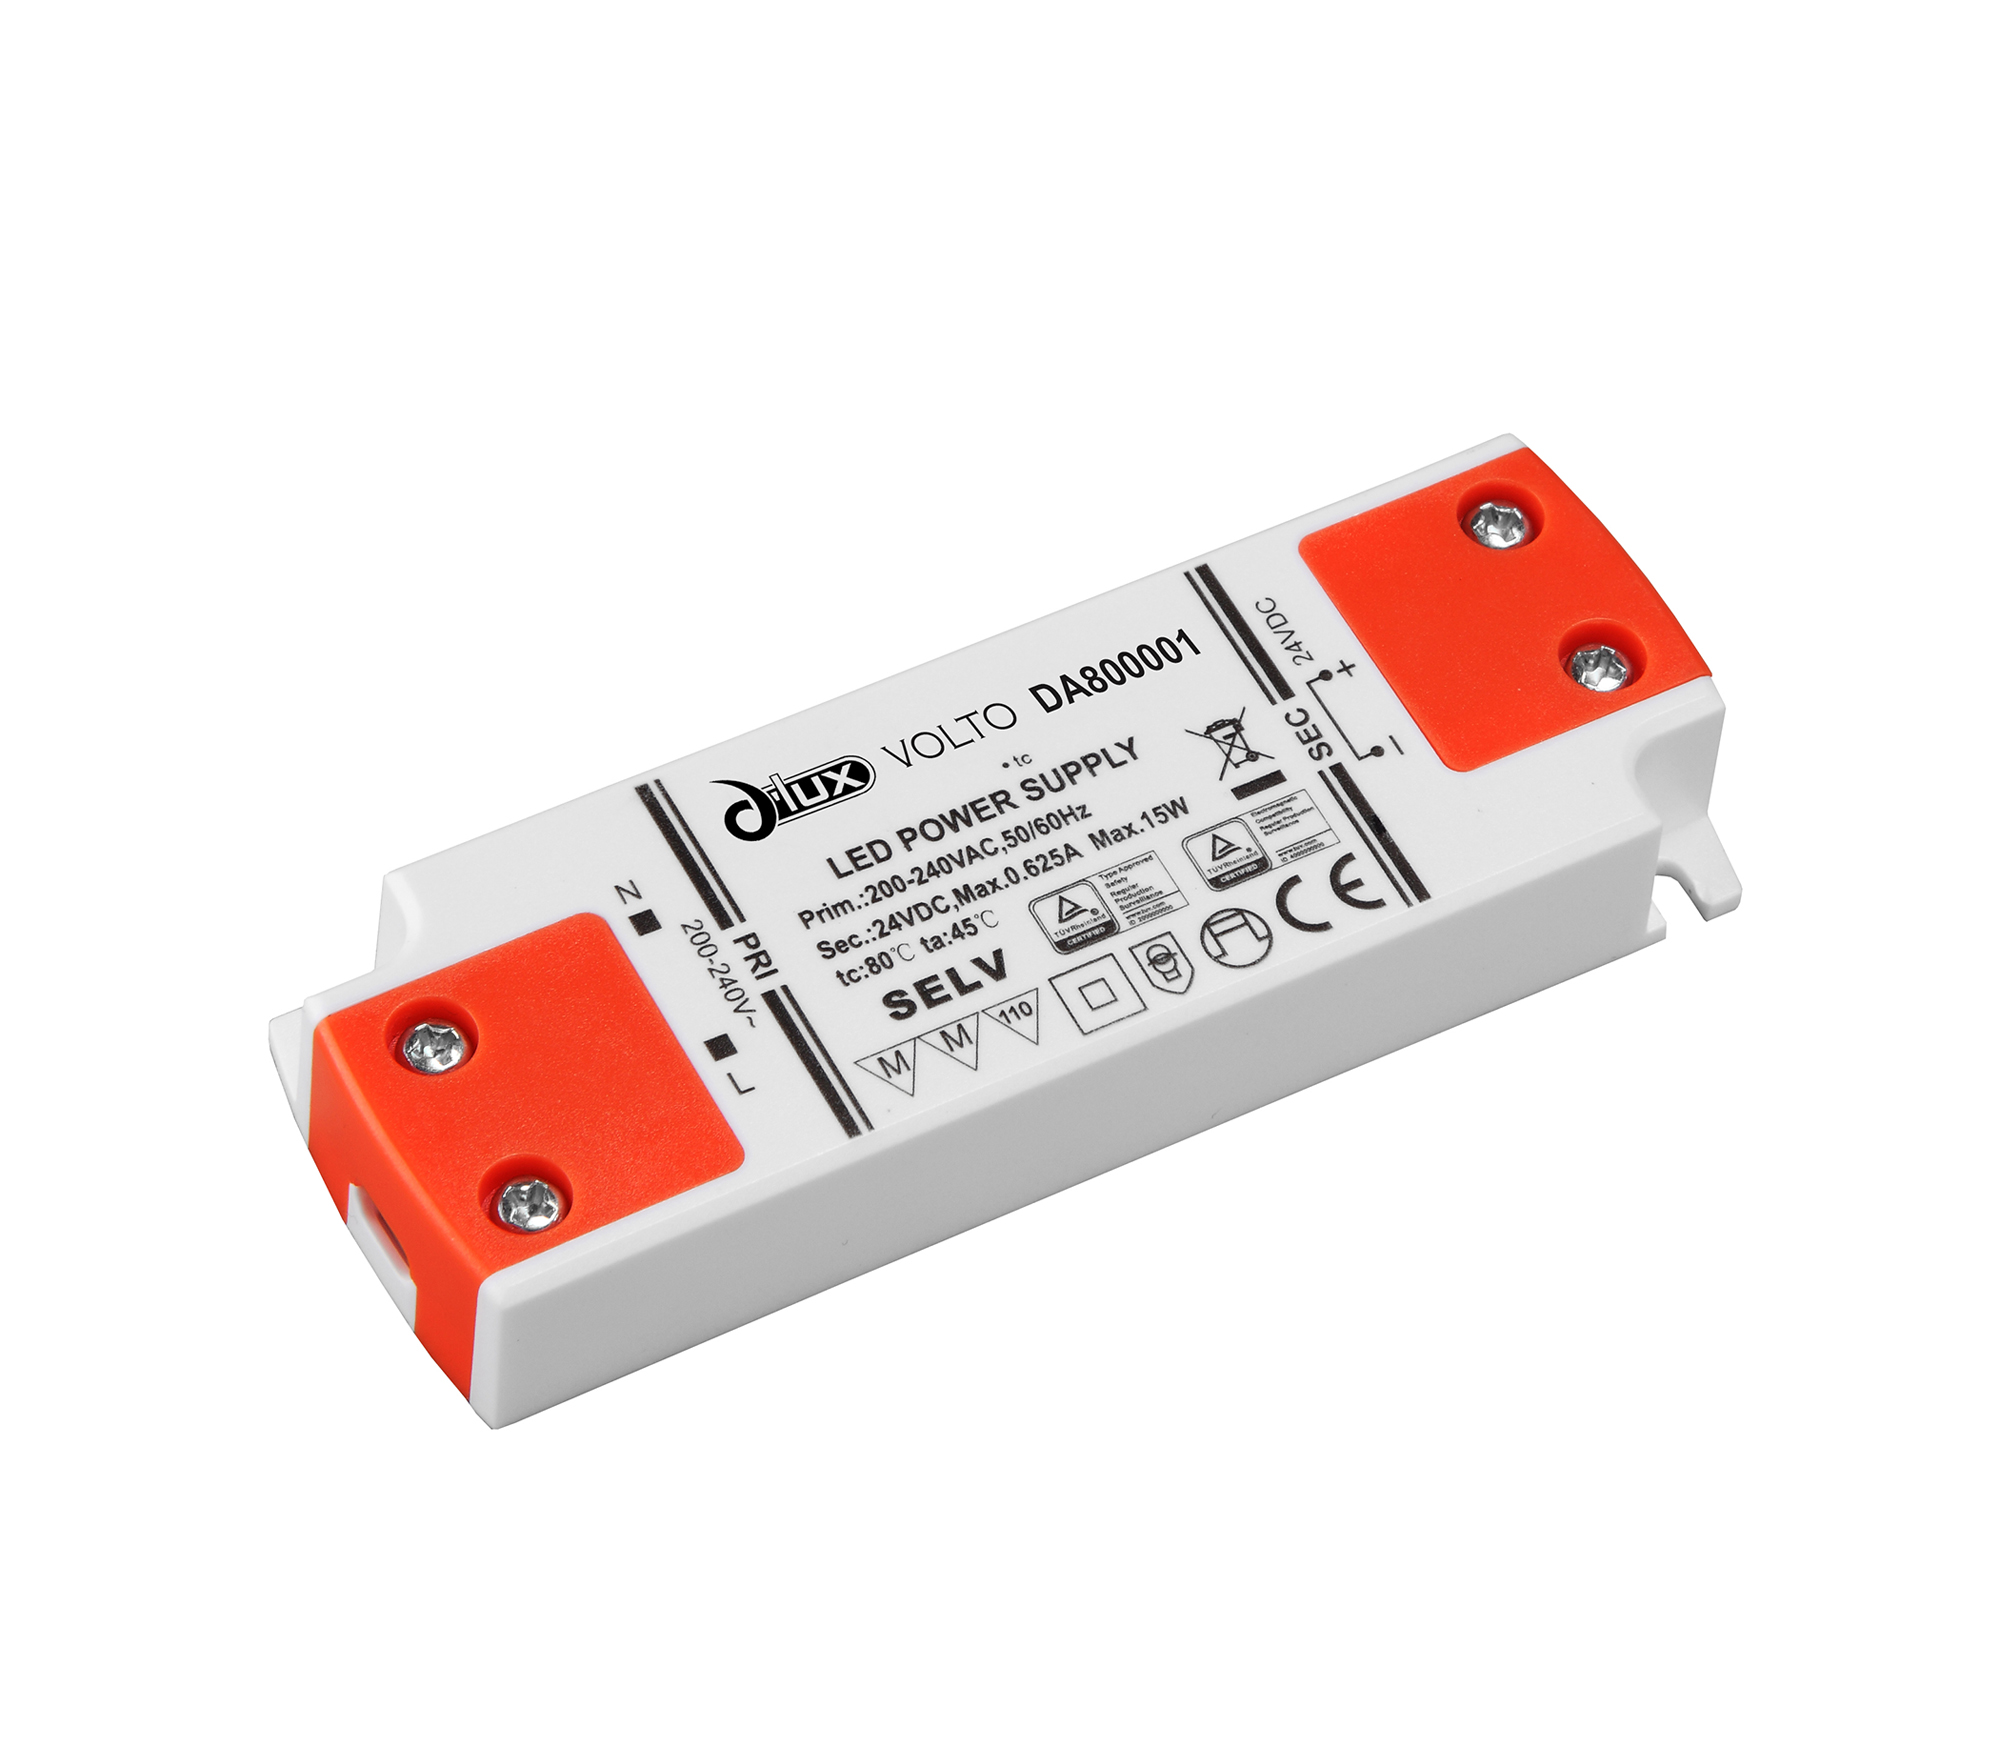 DA800001  Volto; 15W Constant Voltage Non-Dimmable LED Driver; 12VDC